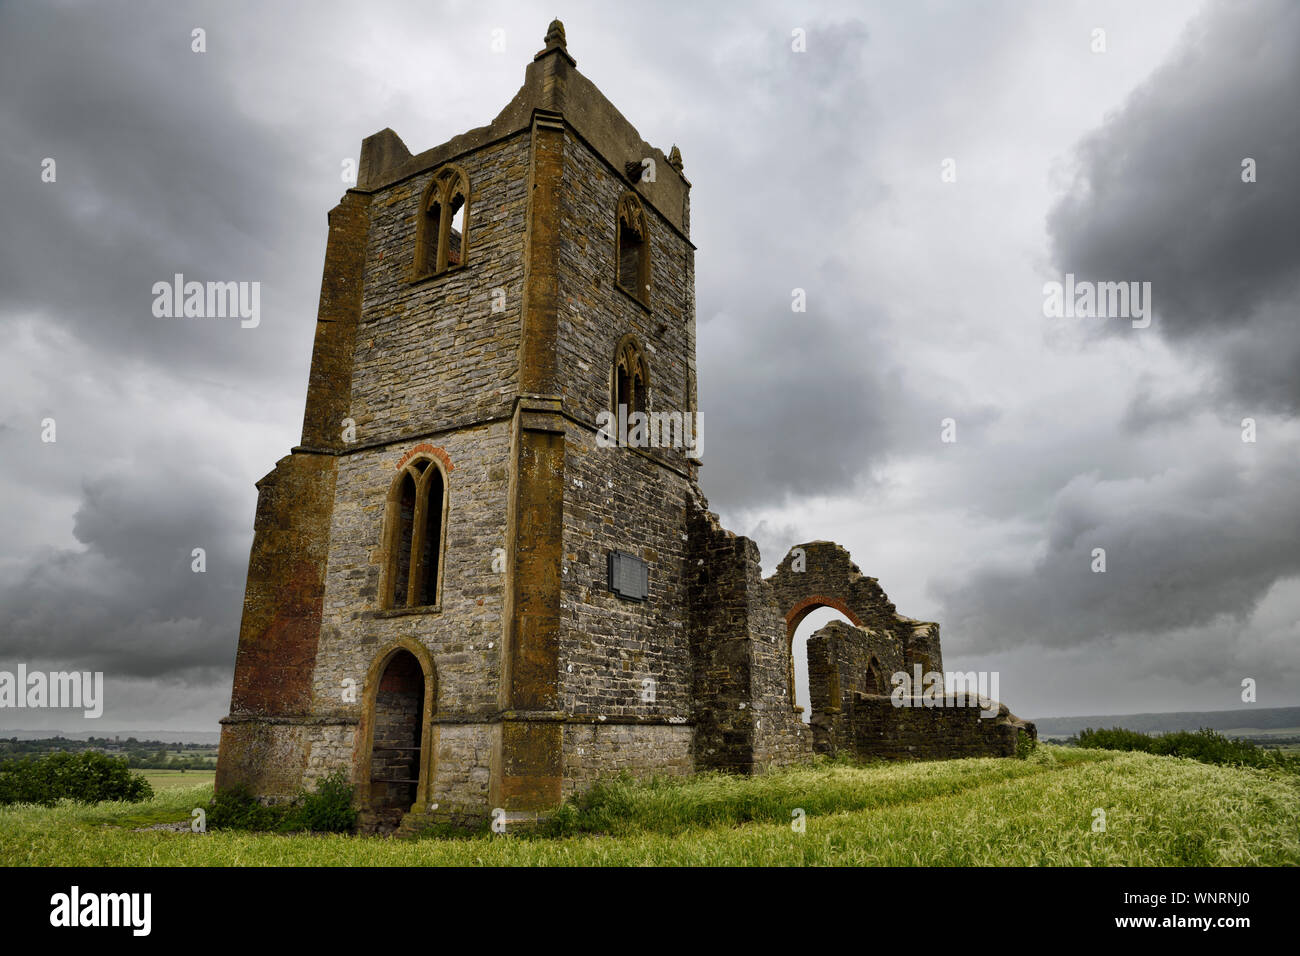 Ruines de l'église Saint-Michel d'au-dessus de Burrow Mump surplombant Southlake Moor en Angleterre sous le pont Terrier ciel nuageux Banque D'Images